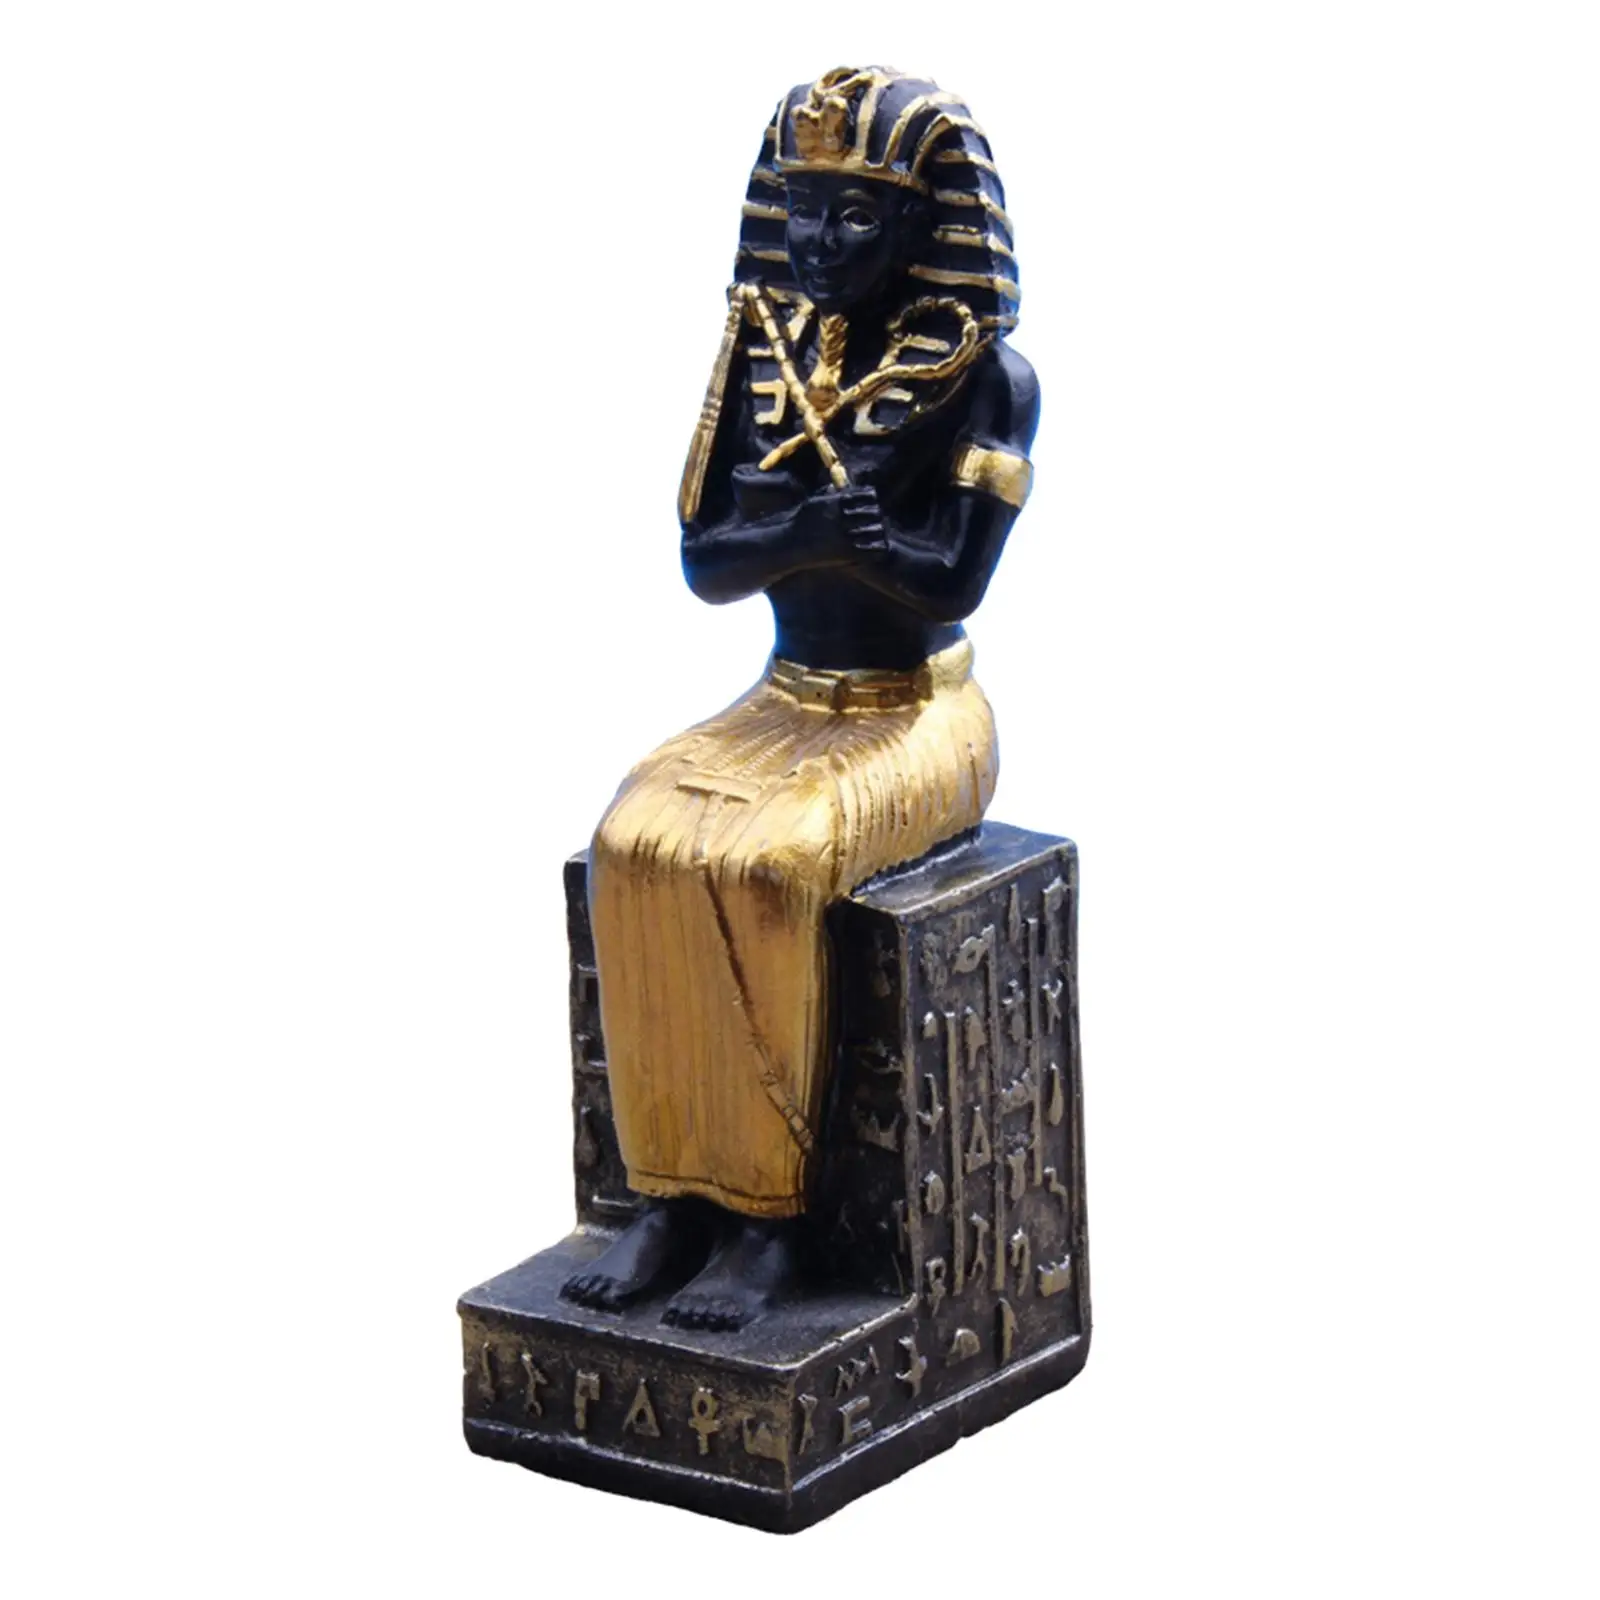 2 Pieces Egyptian Pharaoh Figurine Sculpture Collectible Artware for Desktop